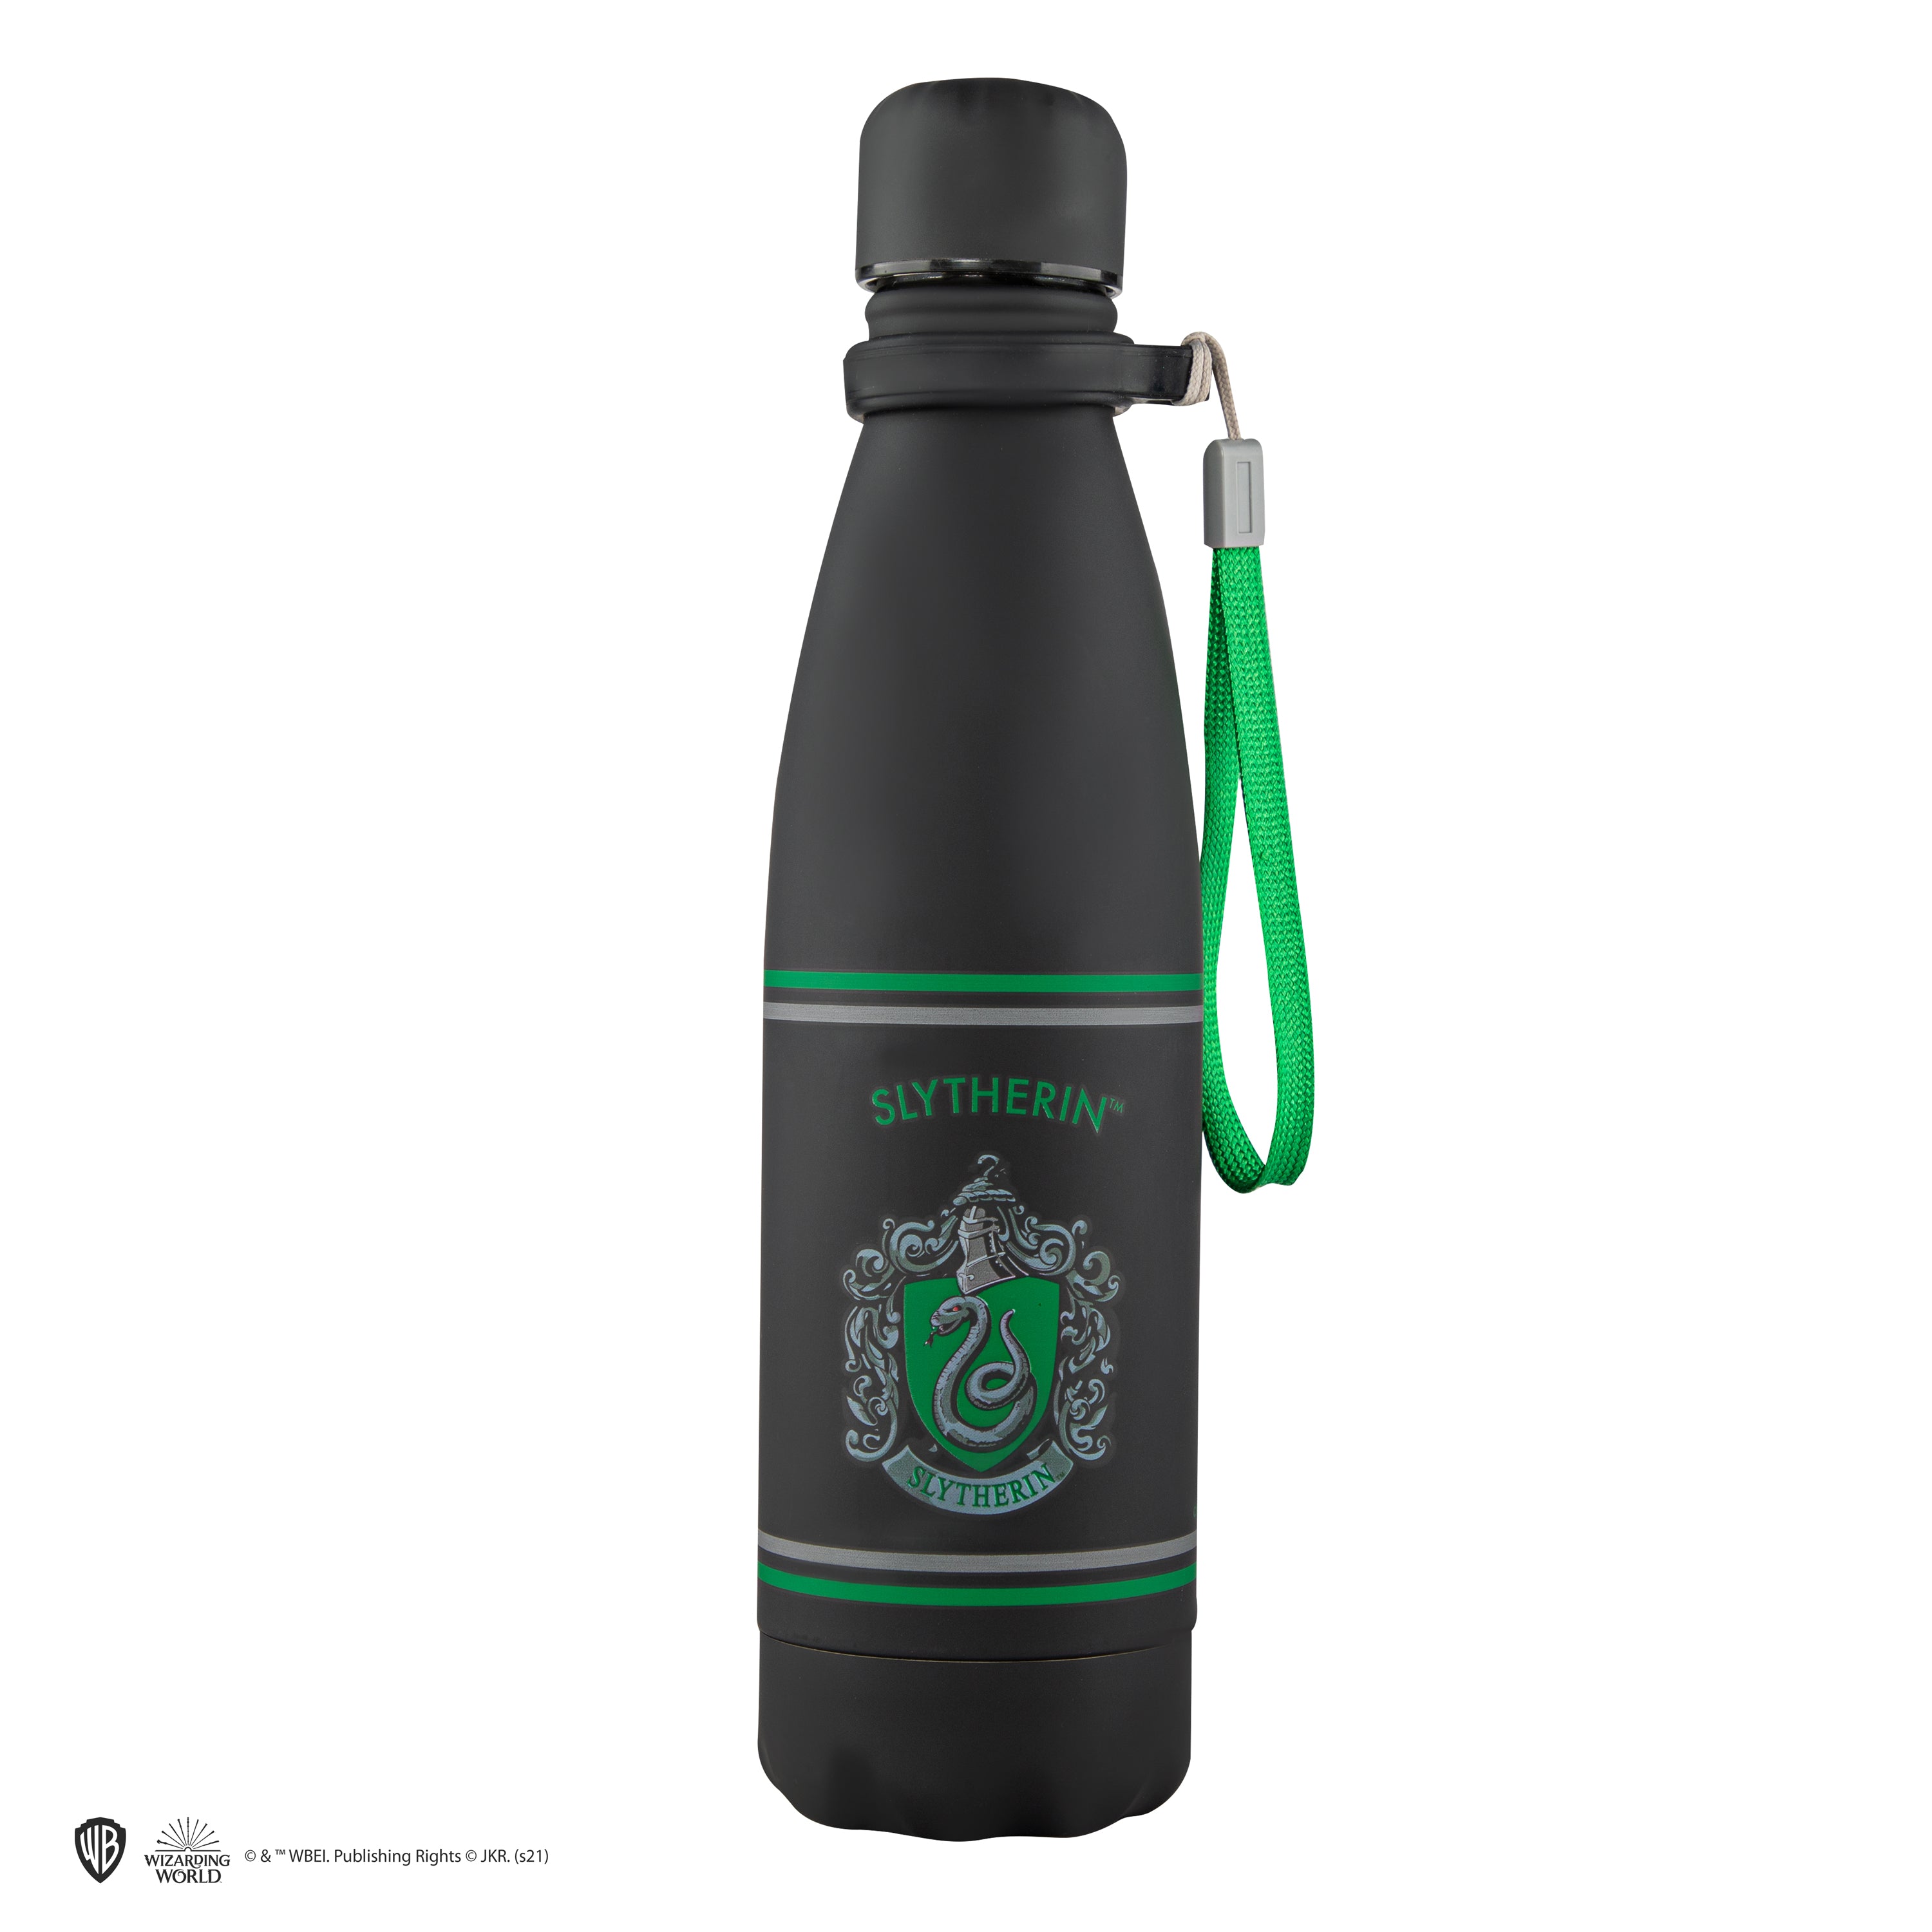  Half Moon Bay Water Bottle, Harry Potter Slytherin Water Bottle  With Straw, Drinks Bottle, Kids Water Bottles With Straw, Harry Potter Water  Bottle